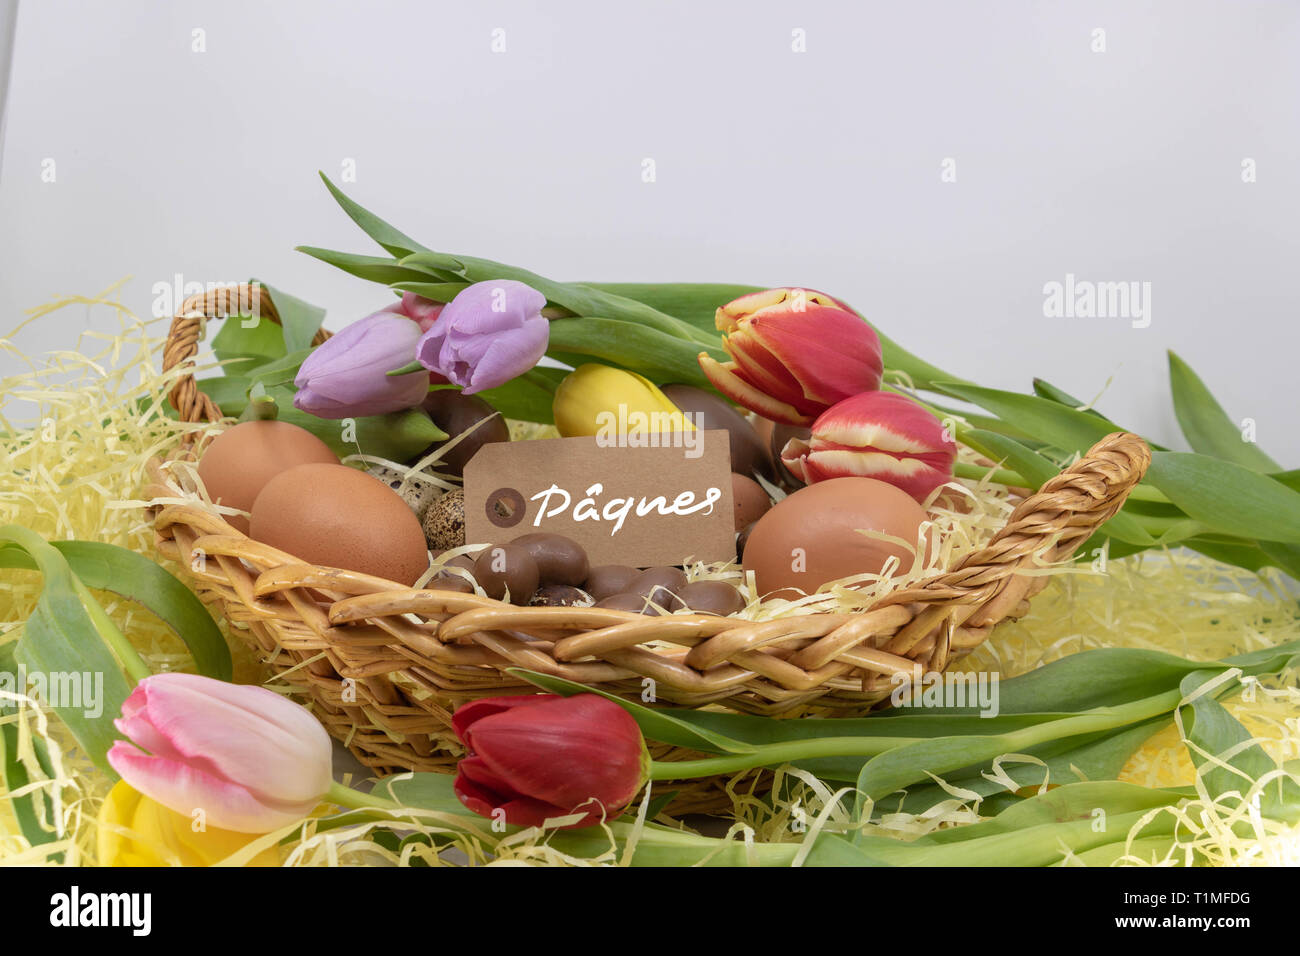 Pâques Pâques est écrit en français sur une étiquette dans un panier rempli d'oeufs de poule, caille, chocolat ainsi que les tulipes Banque D'Images